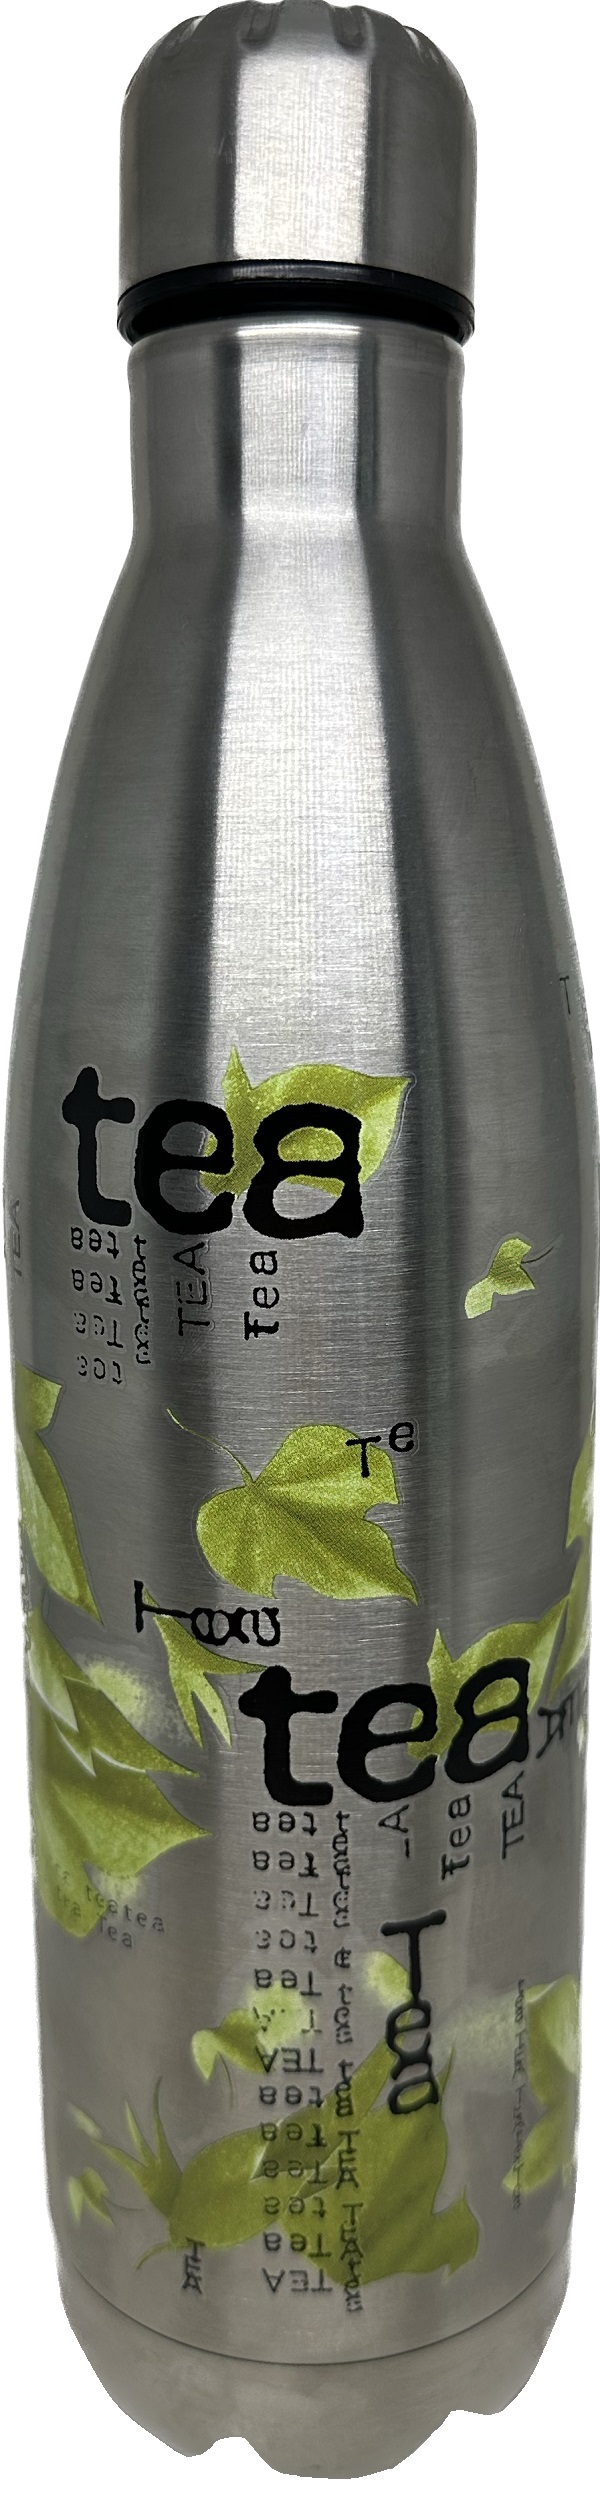 Termos: Tea